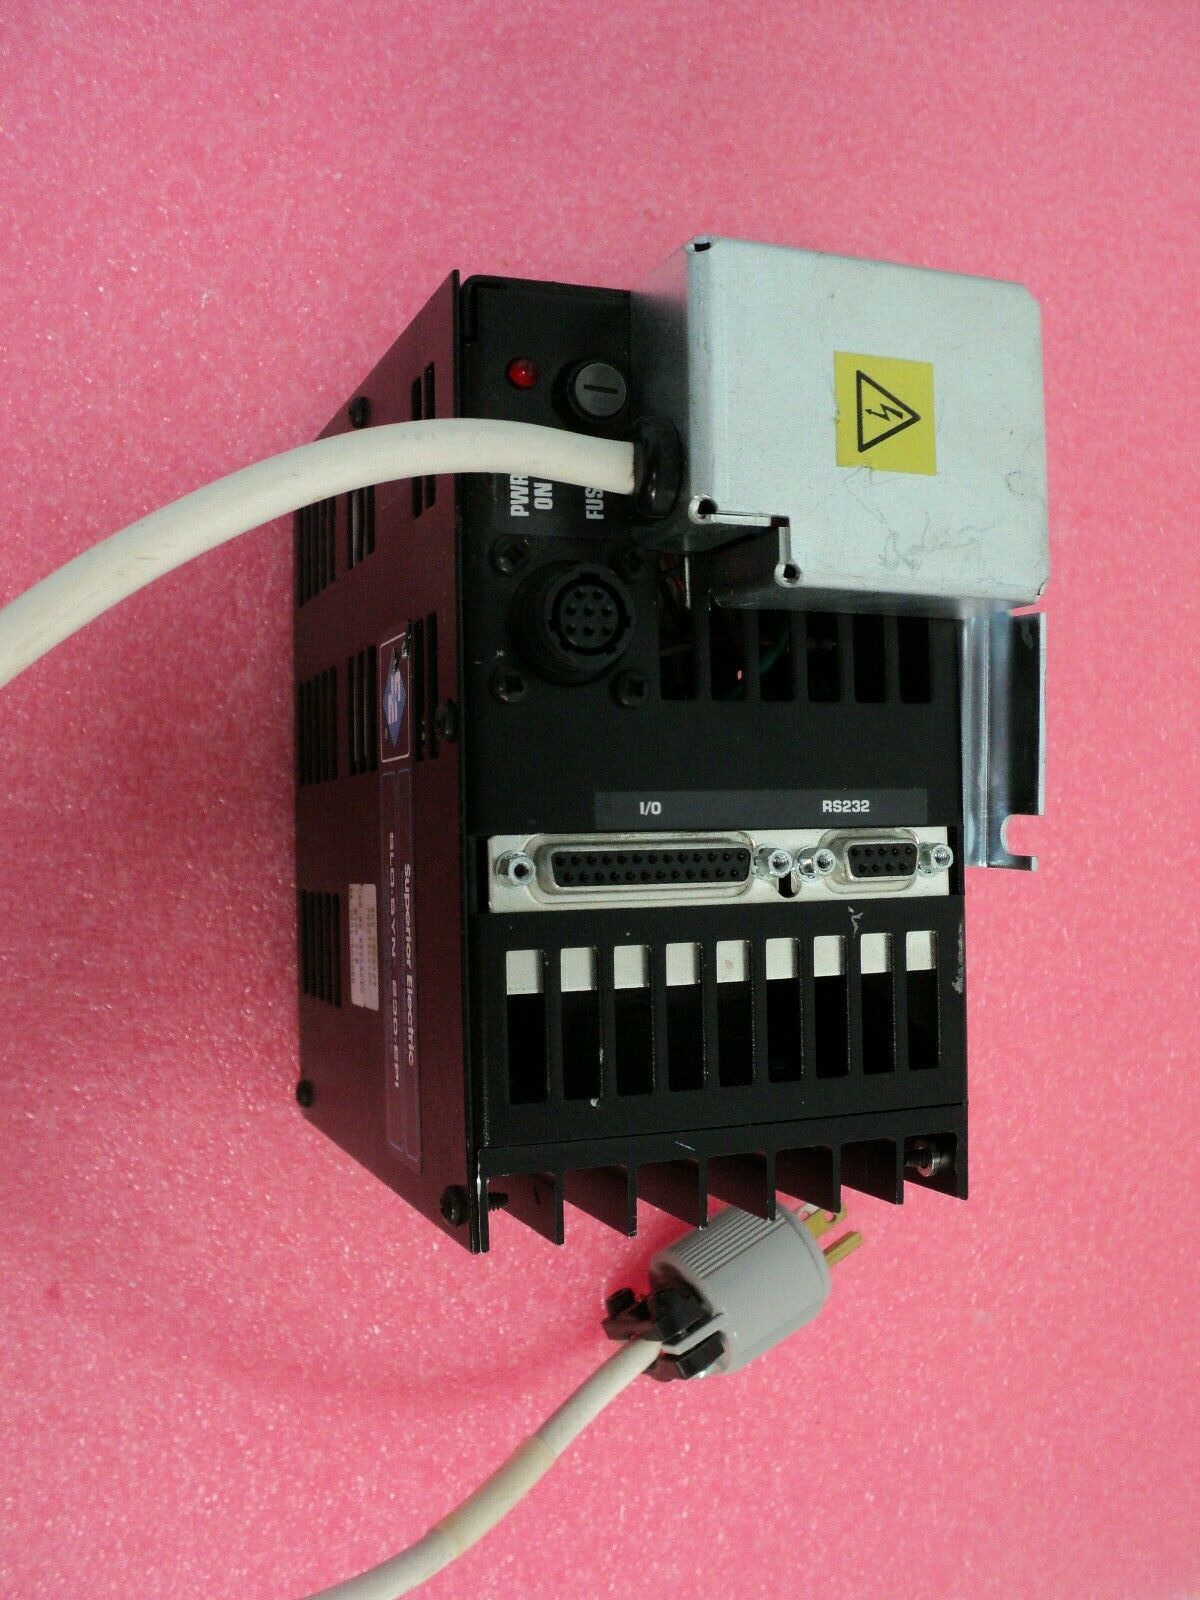 Foto Verwendet SUPERIOR ELECTRIC SLO-SYN 230-EPI Zum Verkauf